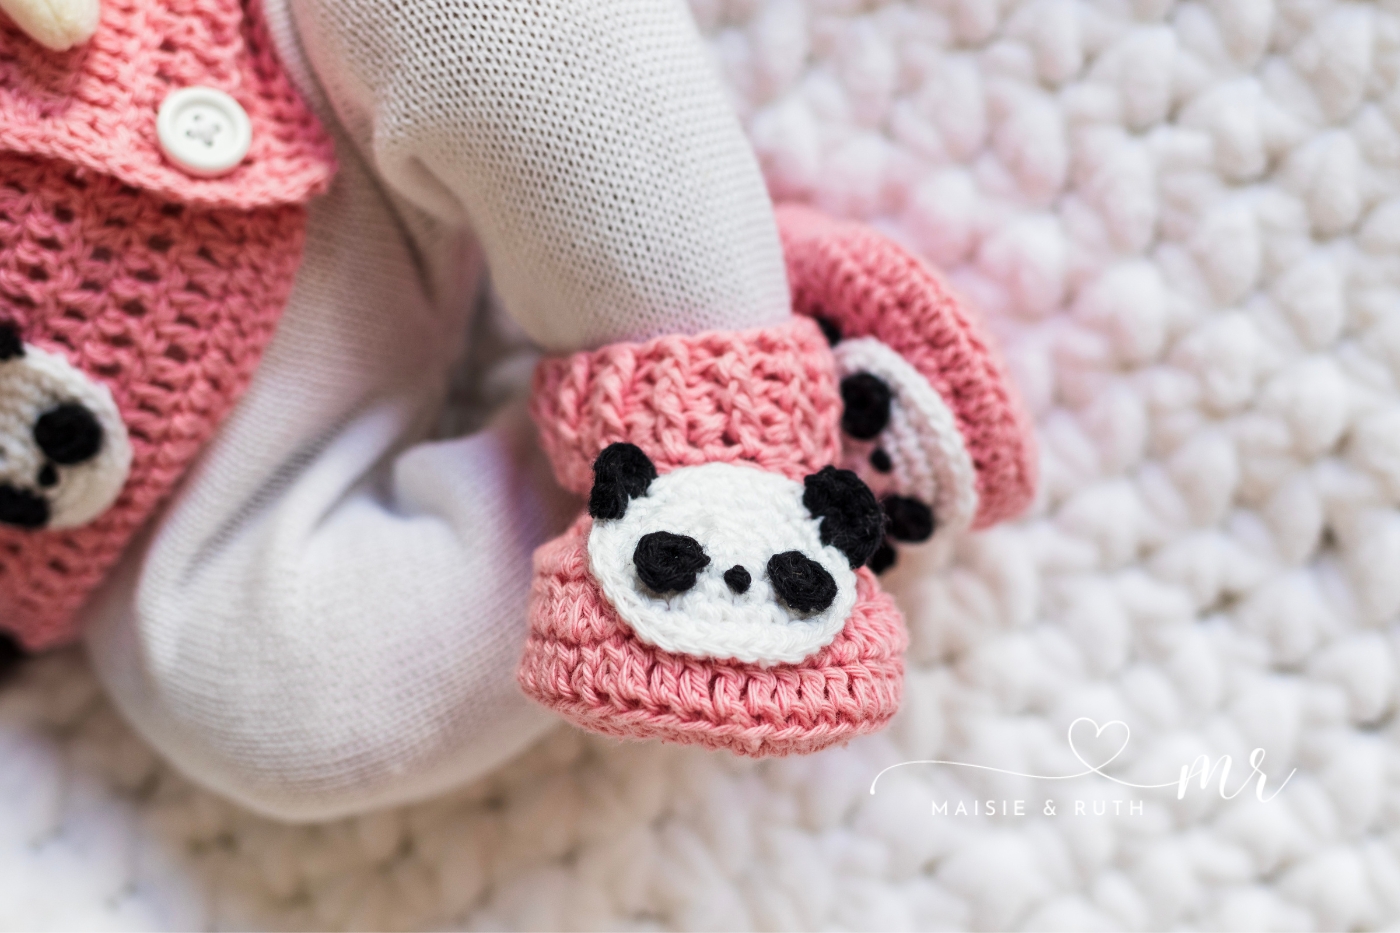 panda crochet baby booties on baby